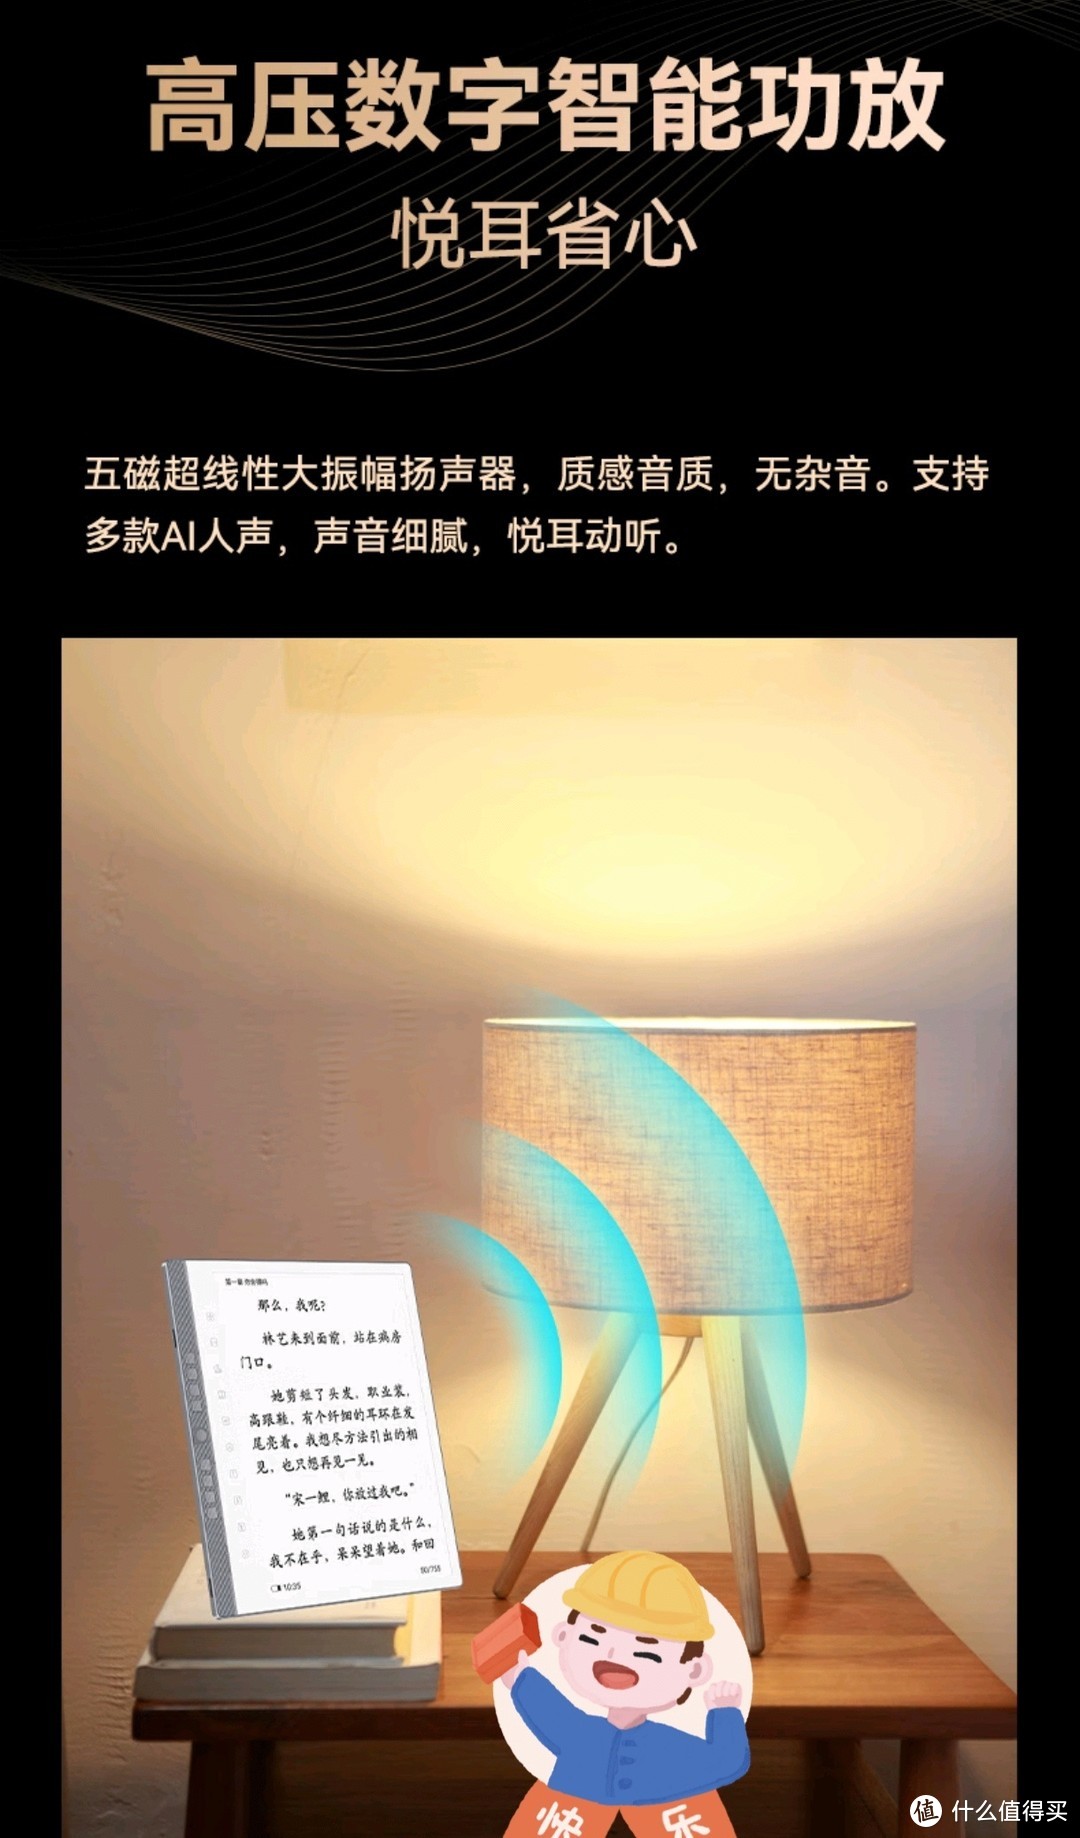 汉王的电子书可以无纸化读书吗？